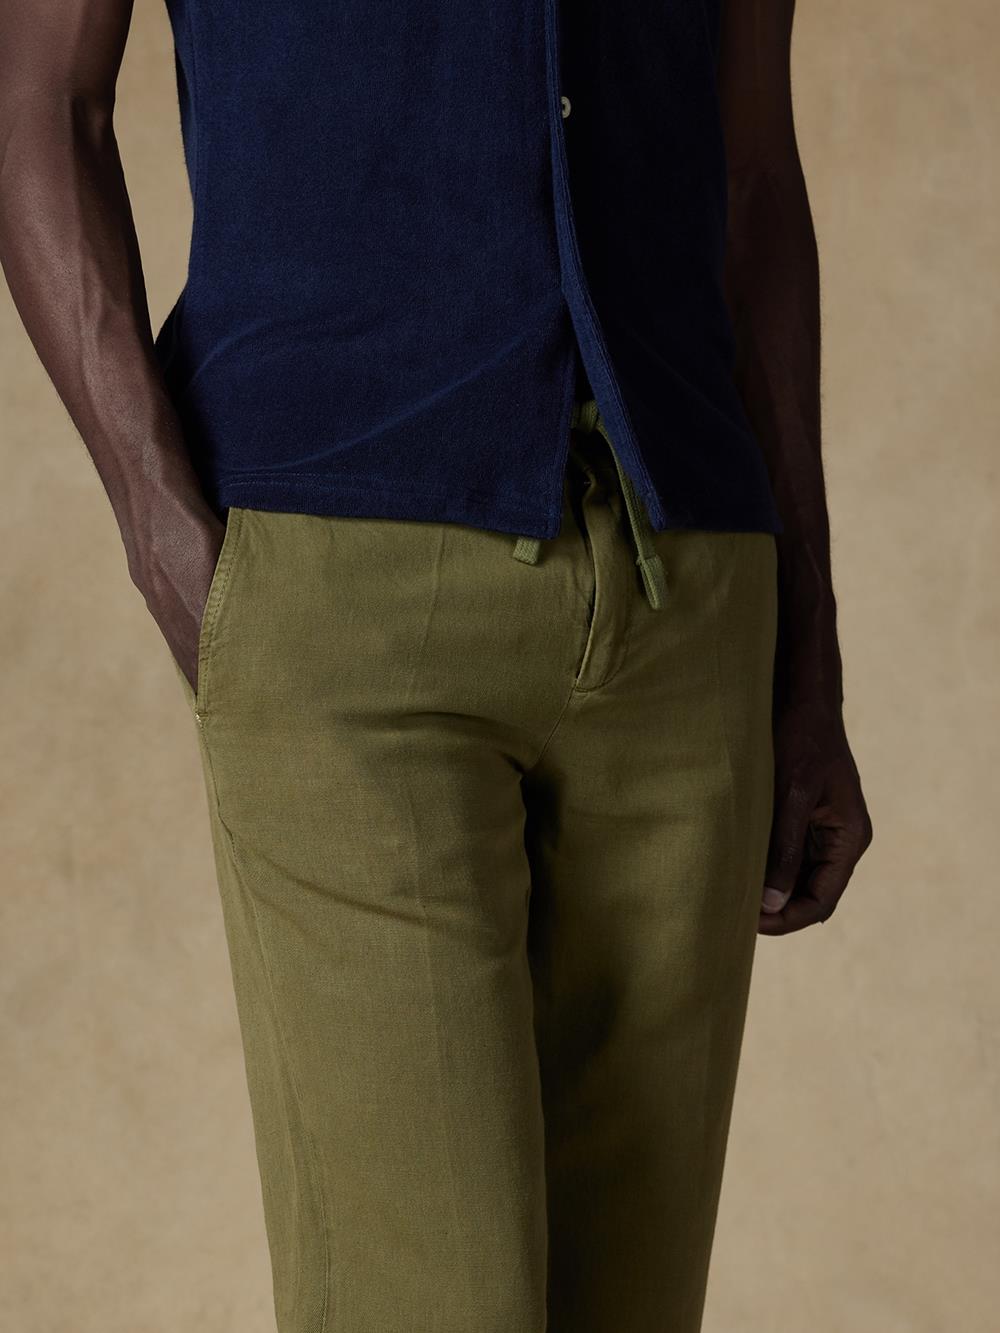 Fred trousers in khaki linen